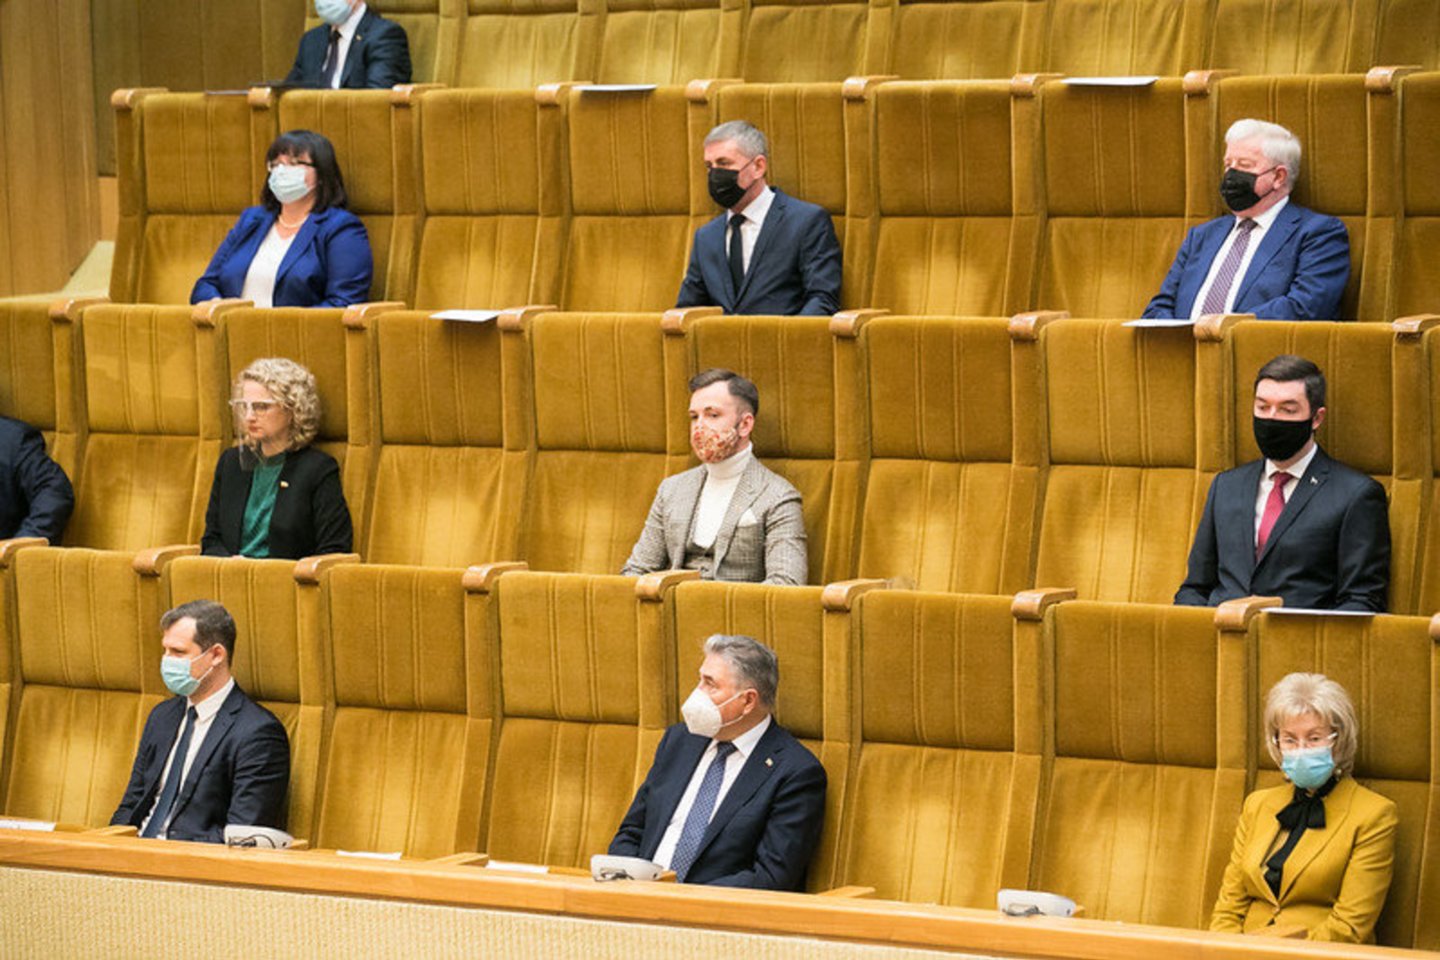 Penktadienis 13-oji – diena, kai prisiekė naujasis Seimas.<br>Seimo kanceliarijos nuotr. (aut. Olga Posaškova, Džoja Gunda Barysaitė)